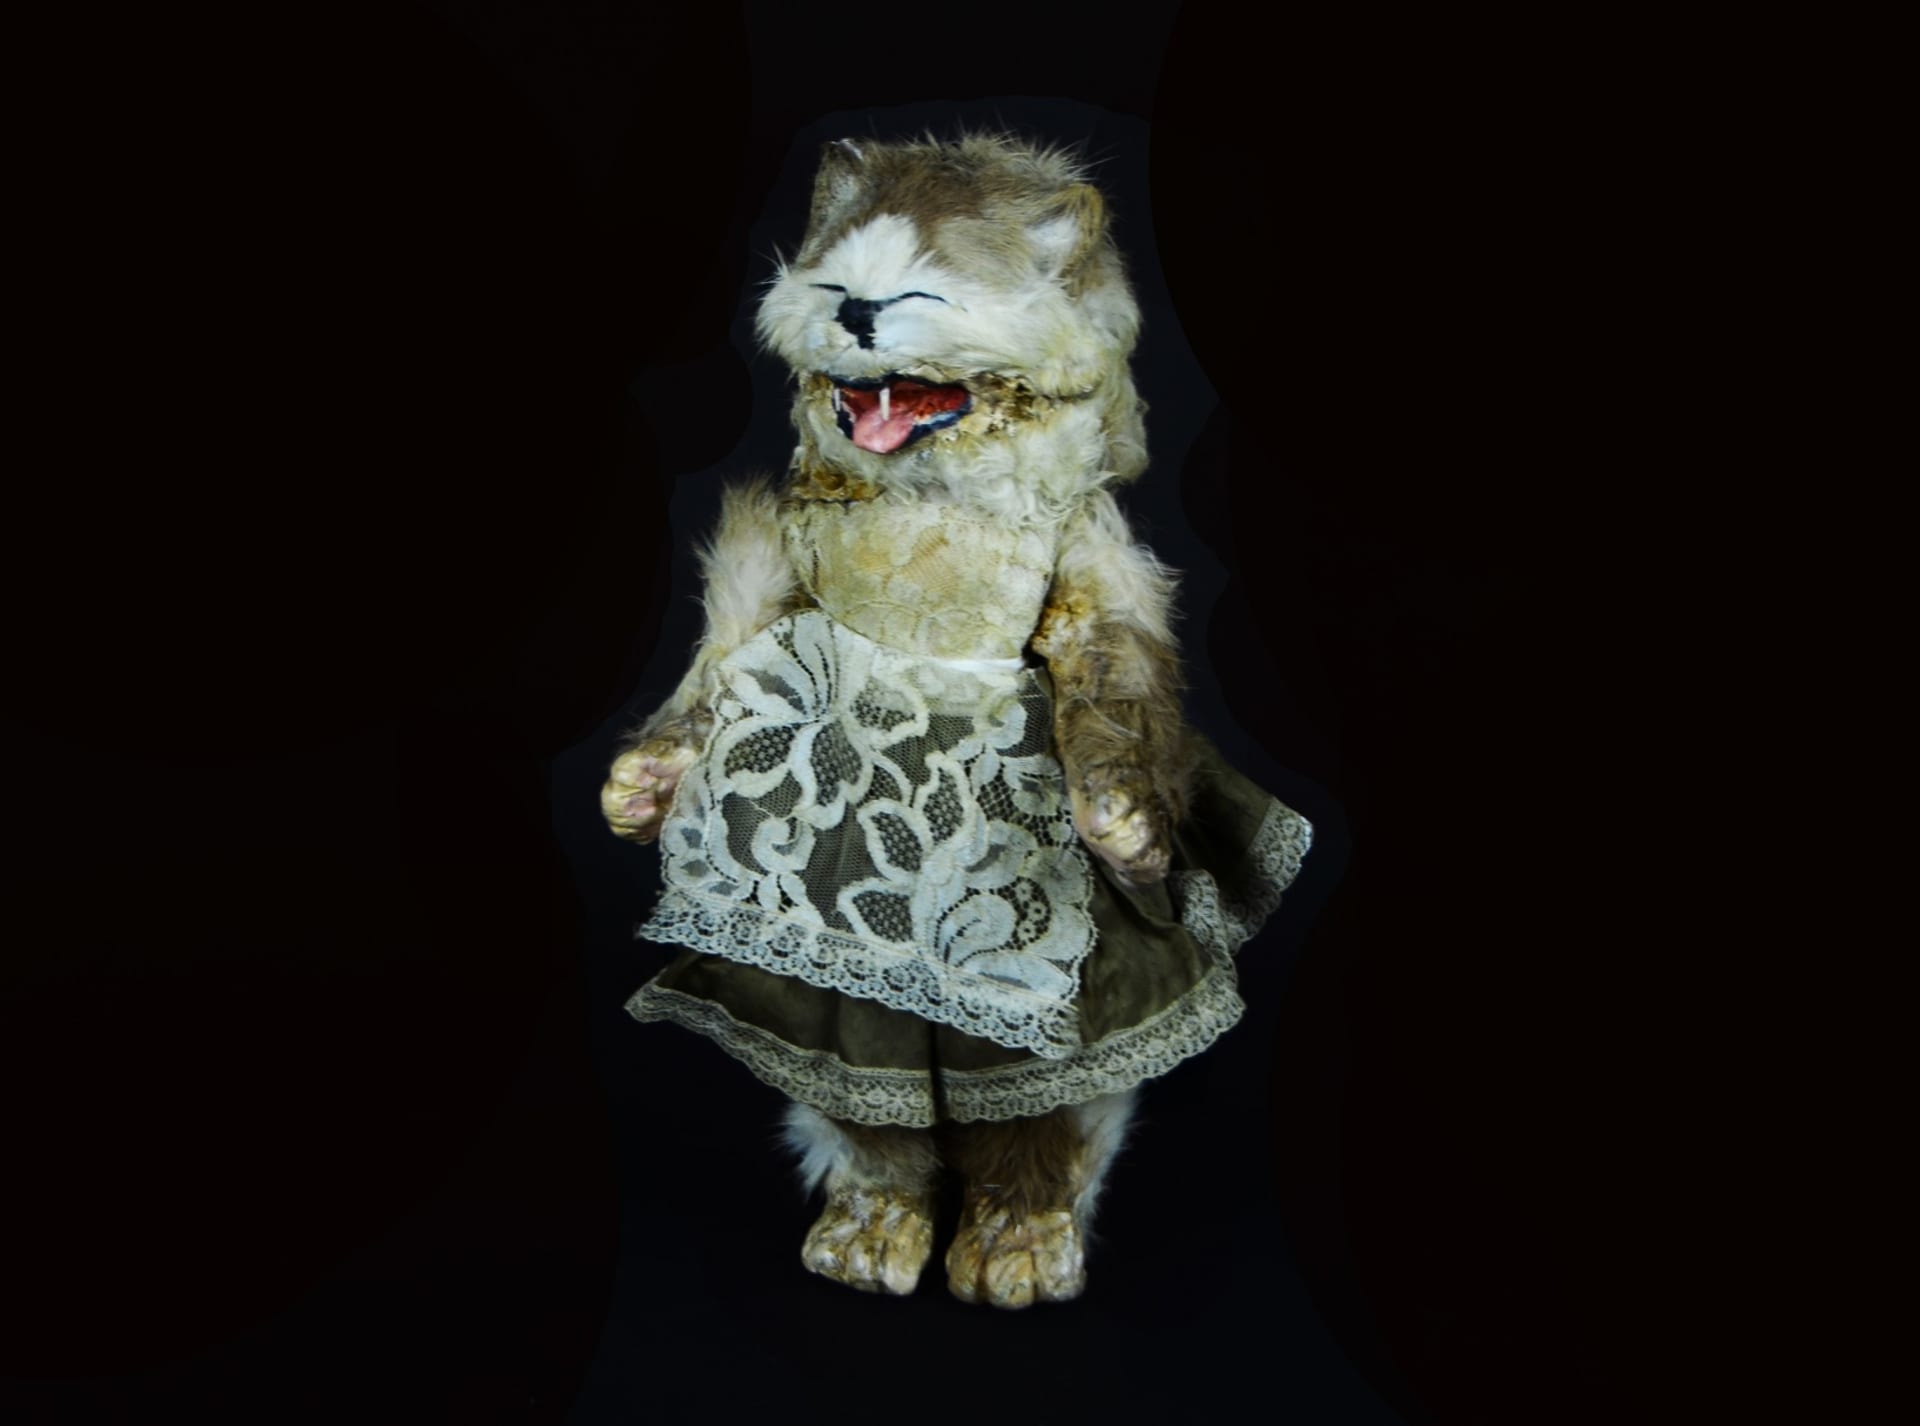 Lidová panenka z poloviny dvacátého století, jež je údajně vytvořená z preparované kočky, kterou se pochlubilo kanadské Muzeum strachu.